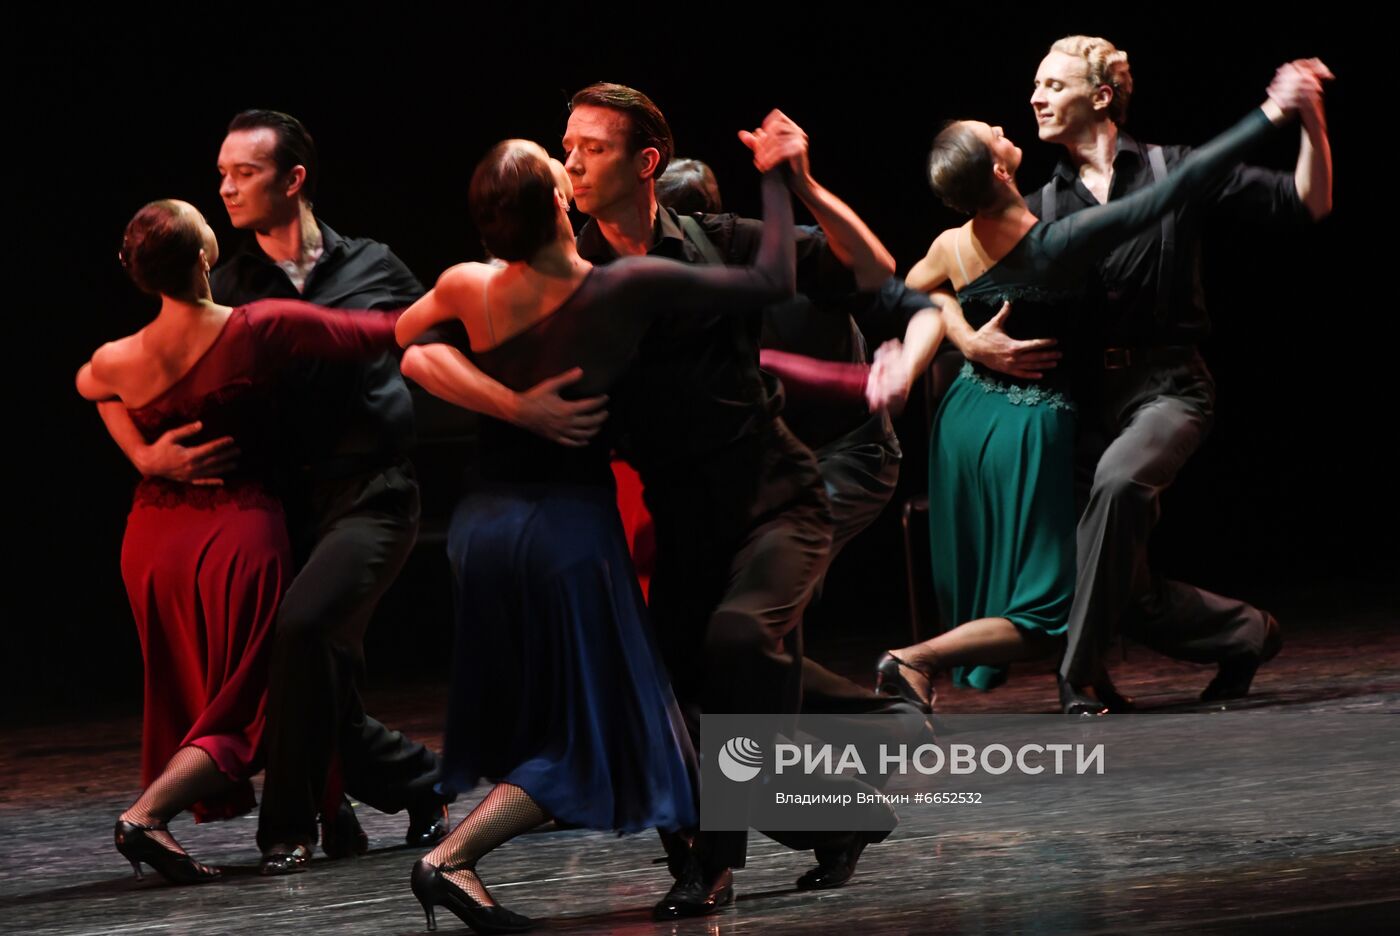 Открытие 85-го концертного сезона Балета Игоря Моисеева